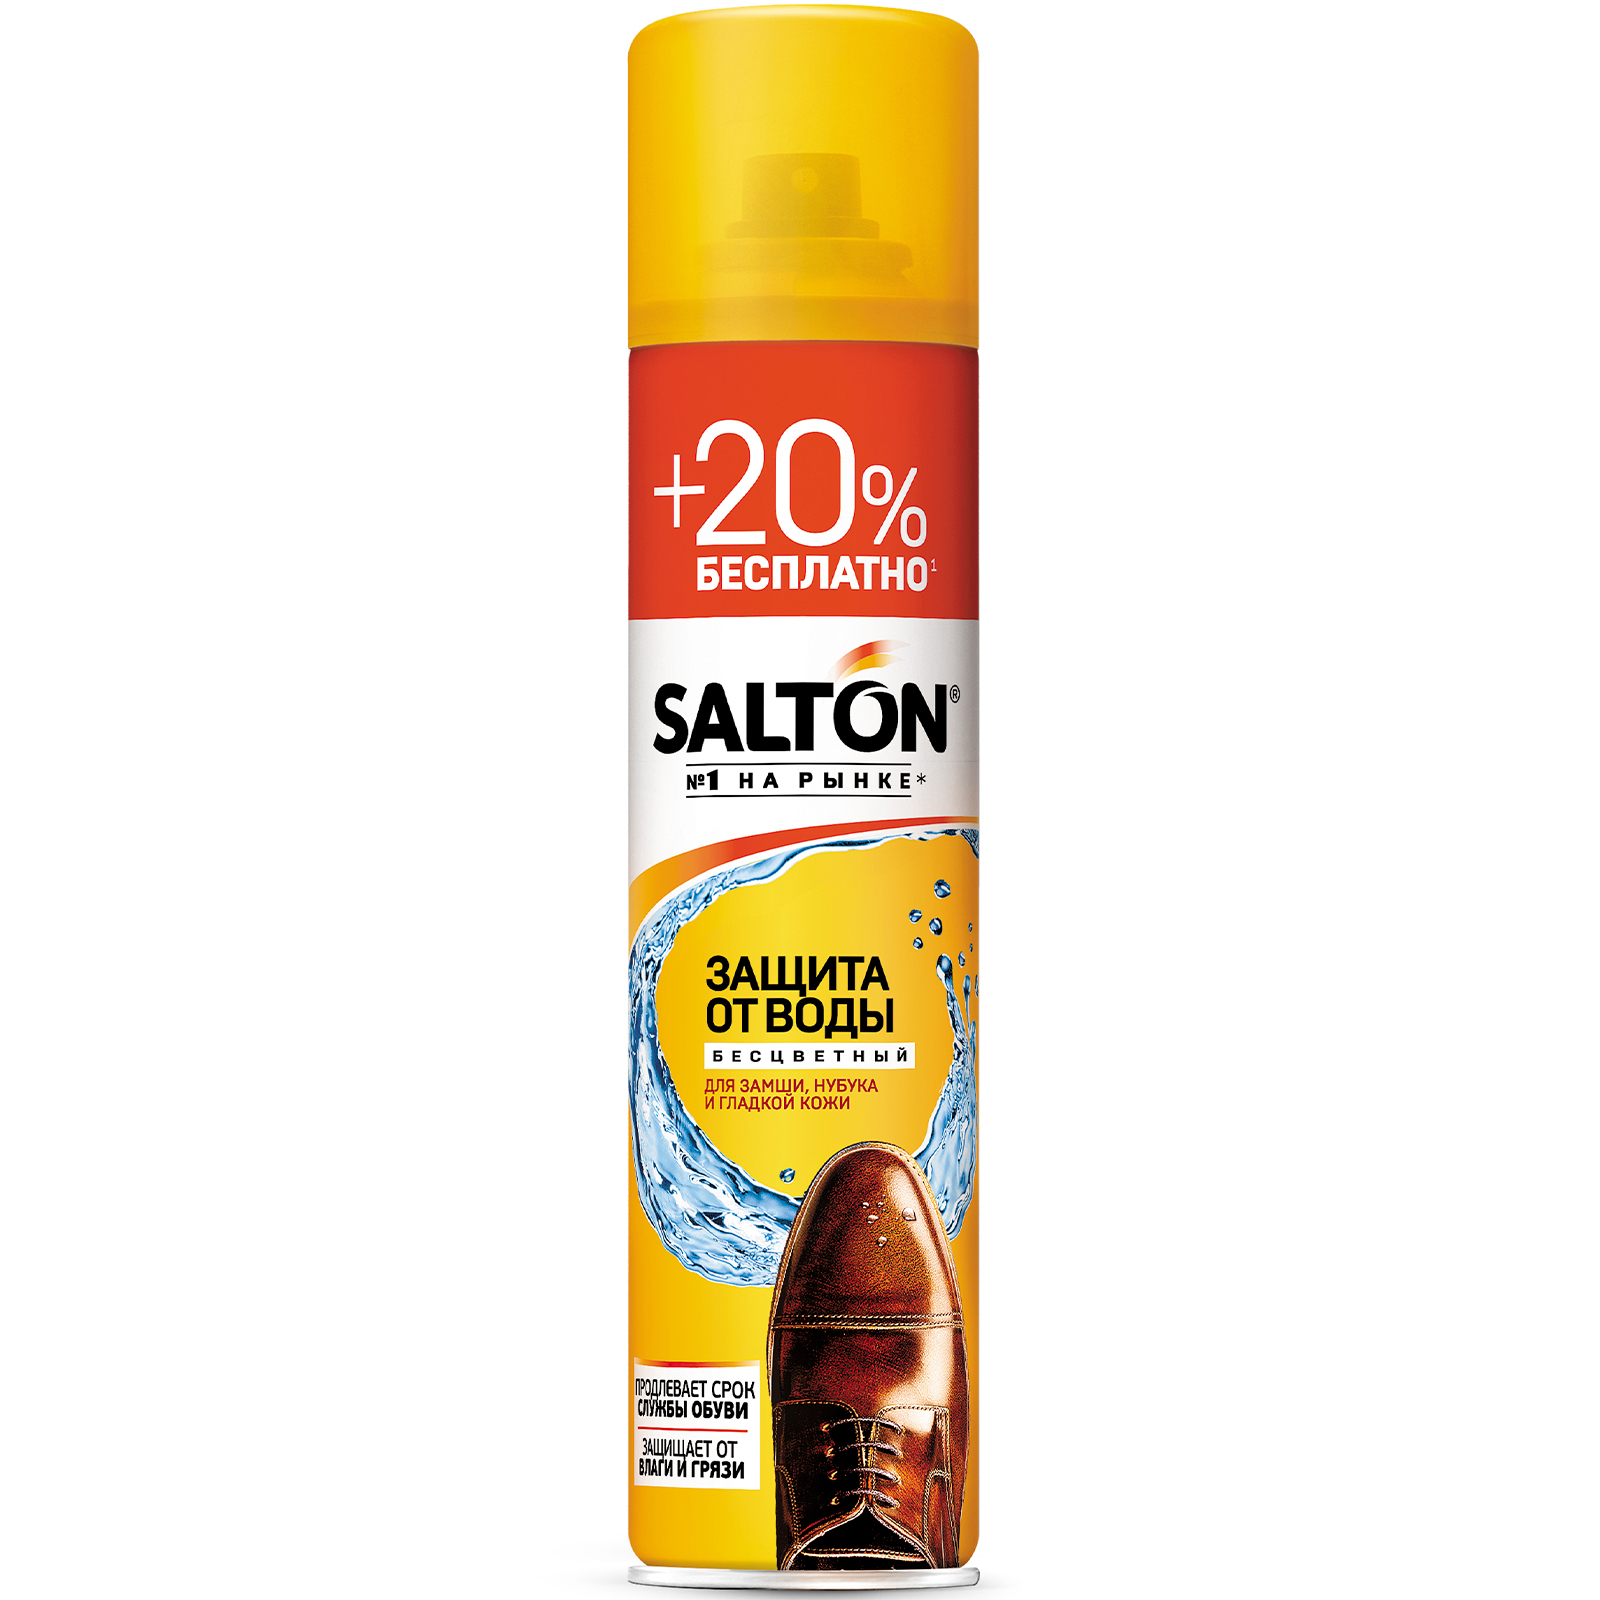 Пропитка Salton водоотталкивающая для защиты обуви и одежды из гладкой кожи, замши, нубука, 250 мл + 50 мл бесплатно